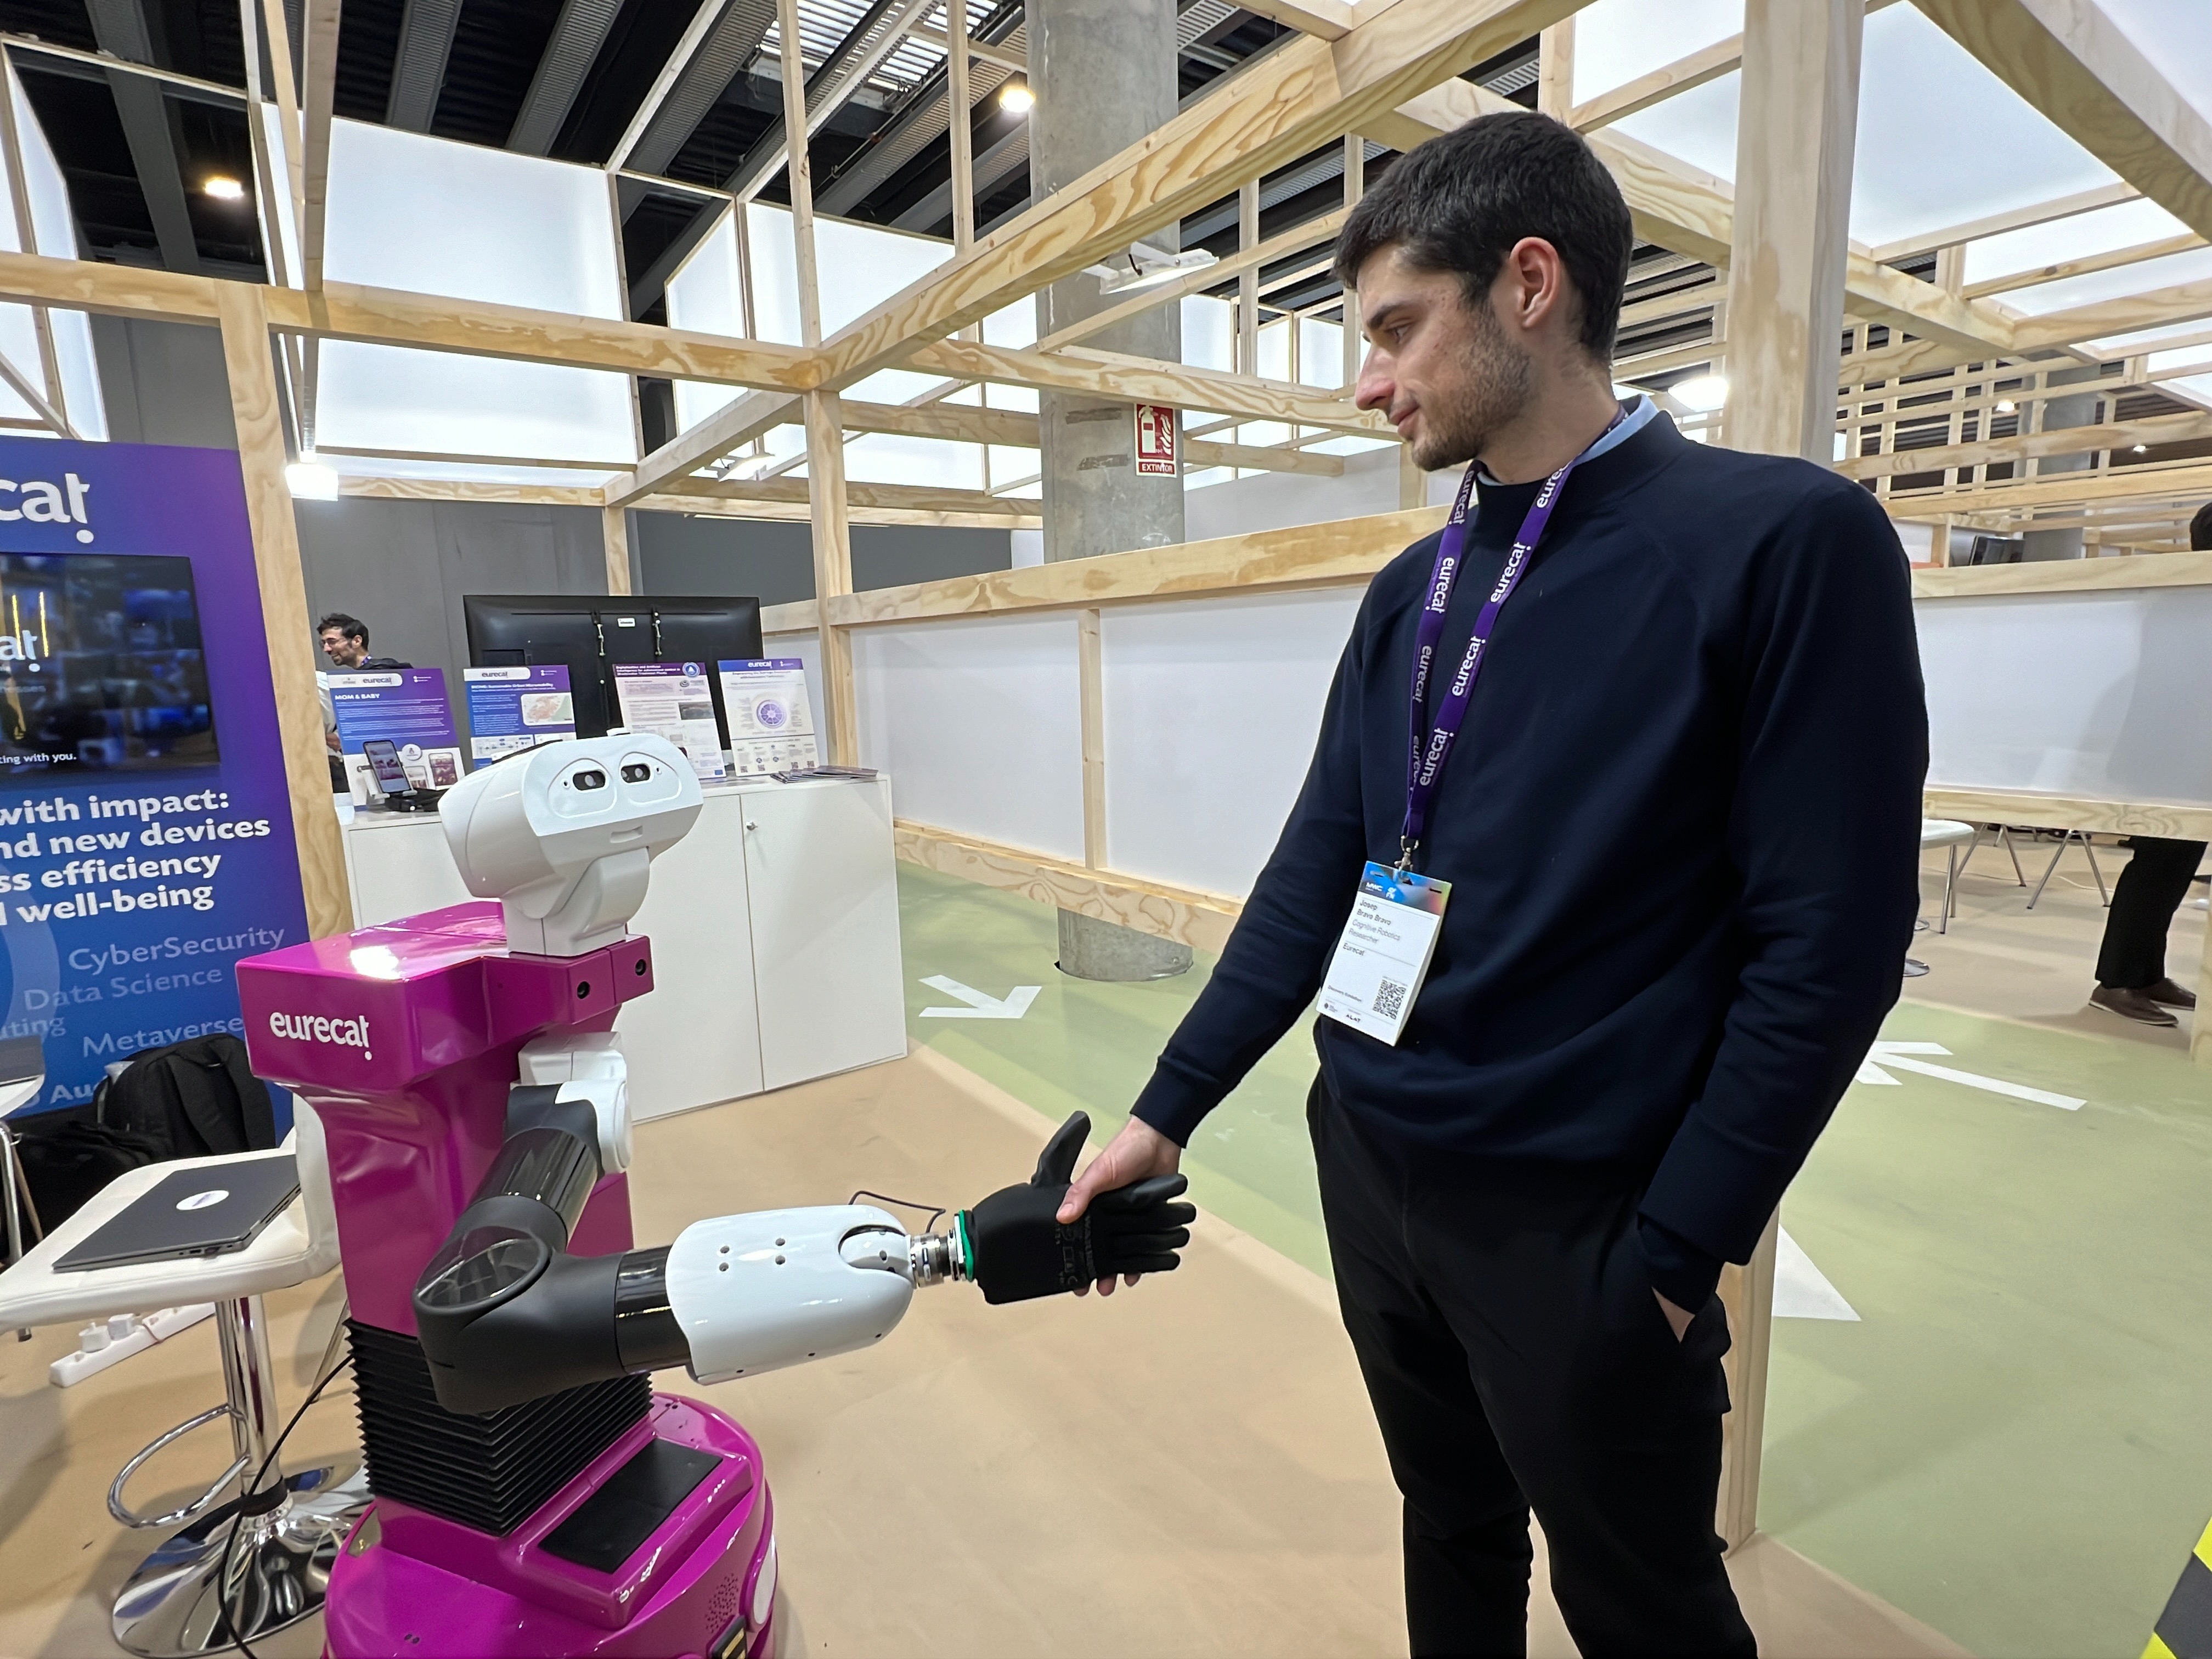 Eurecat ensaya un robot asistencial capaz de mantener una conversación, ofrecer asistencia personalizada y guiar una rutina de ejercicios